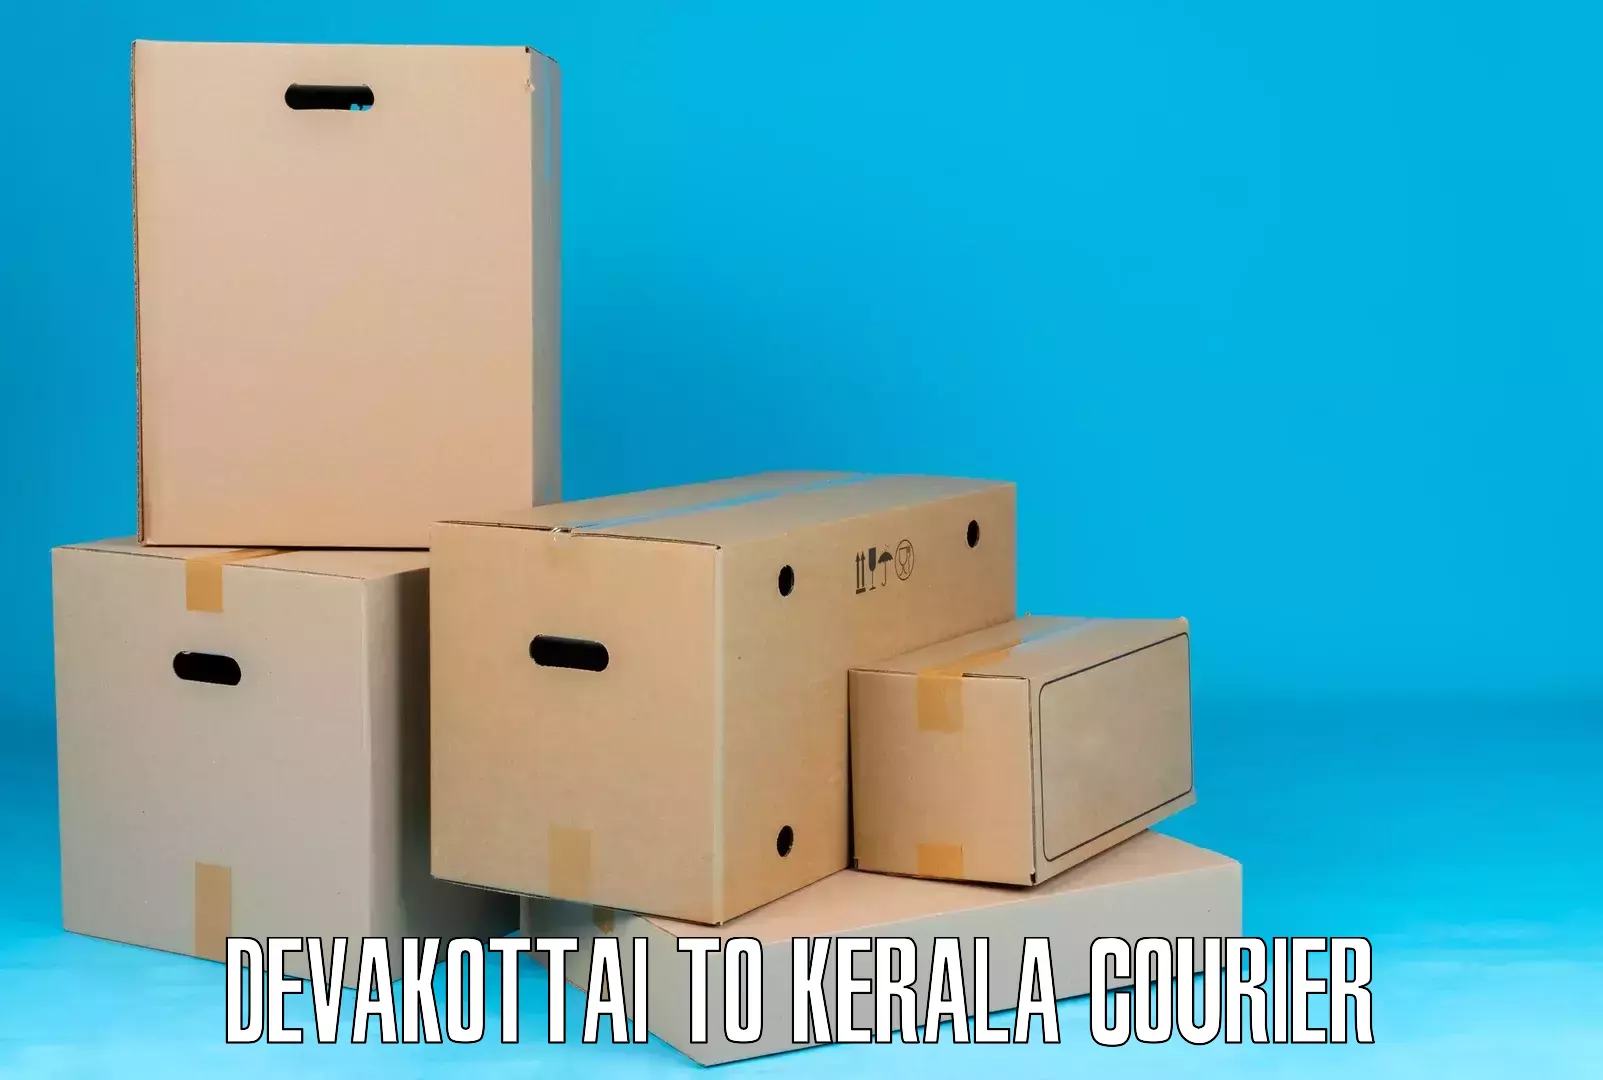 On-call courier service Devakottai to Puthukkad